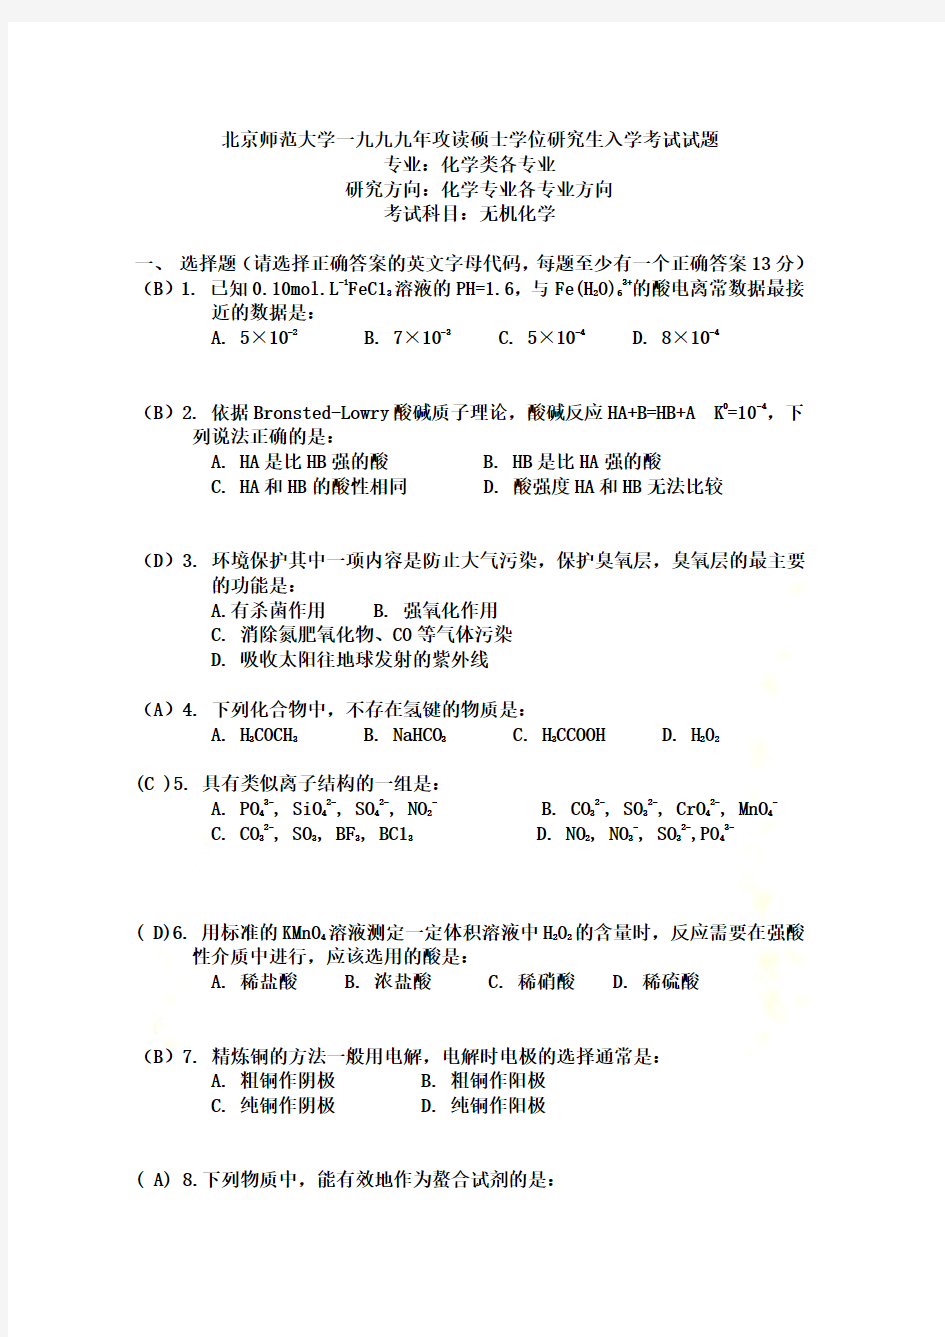 北京师范大学1999年考研试题-无机化学